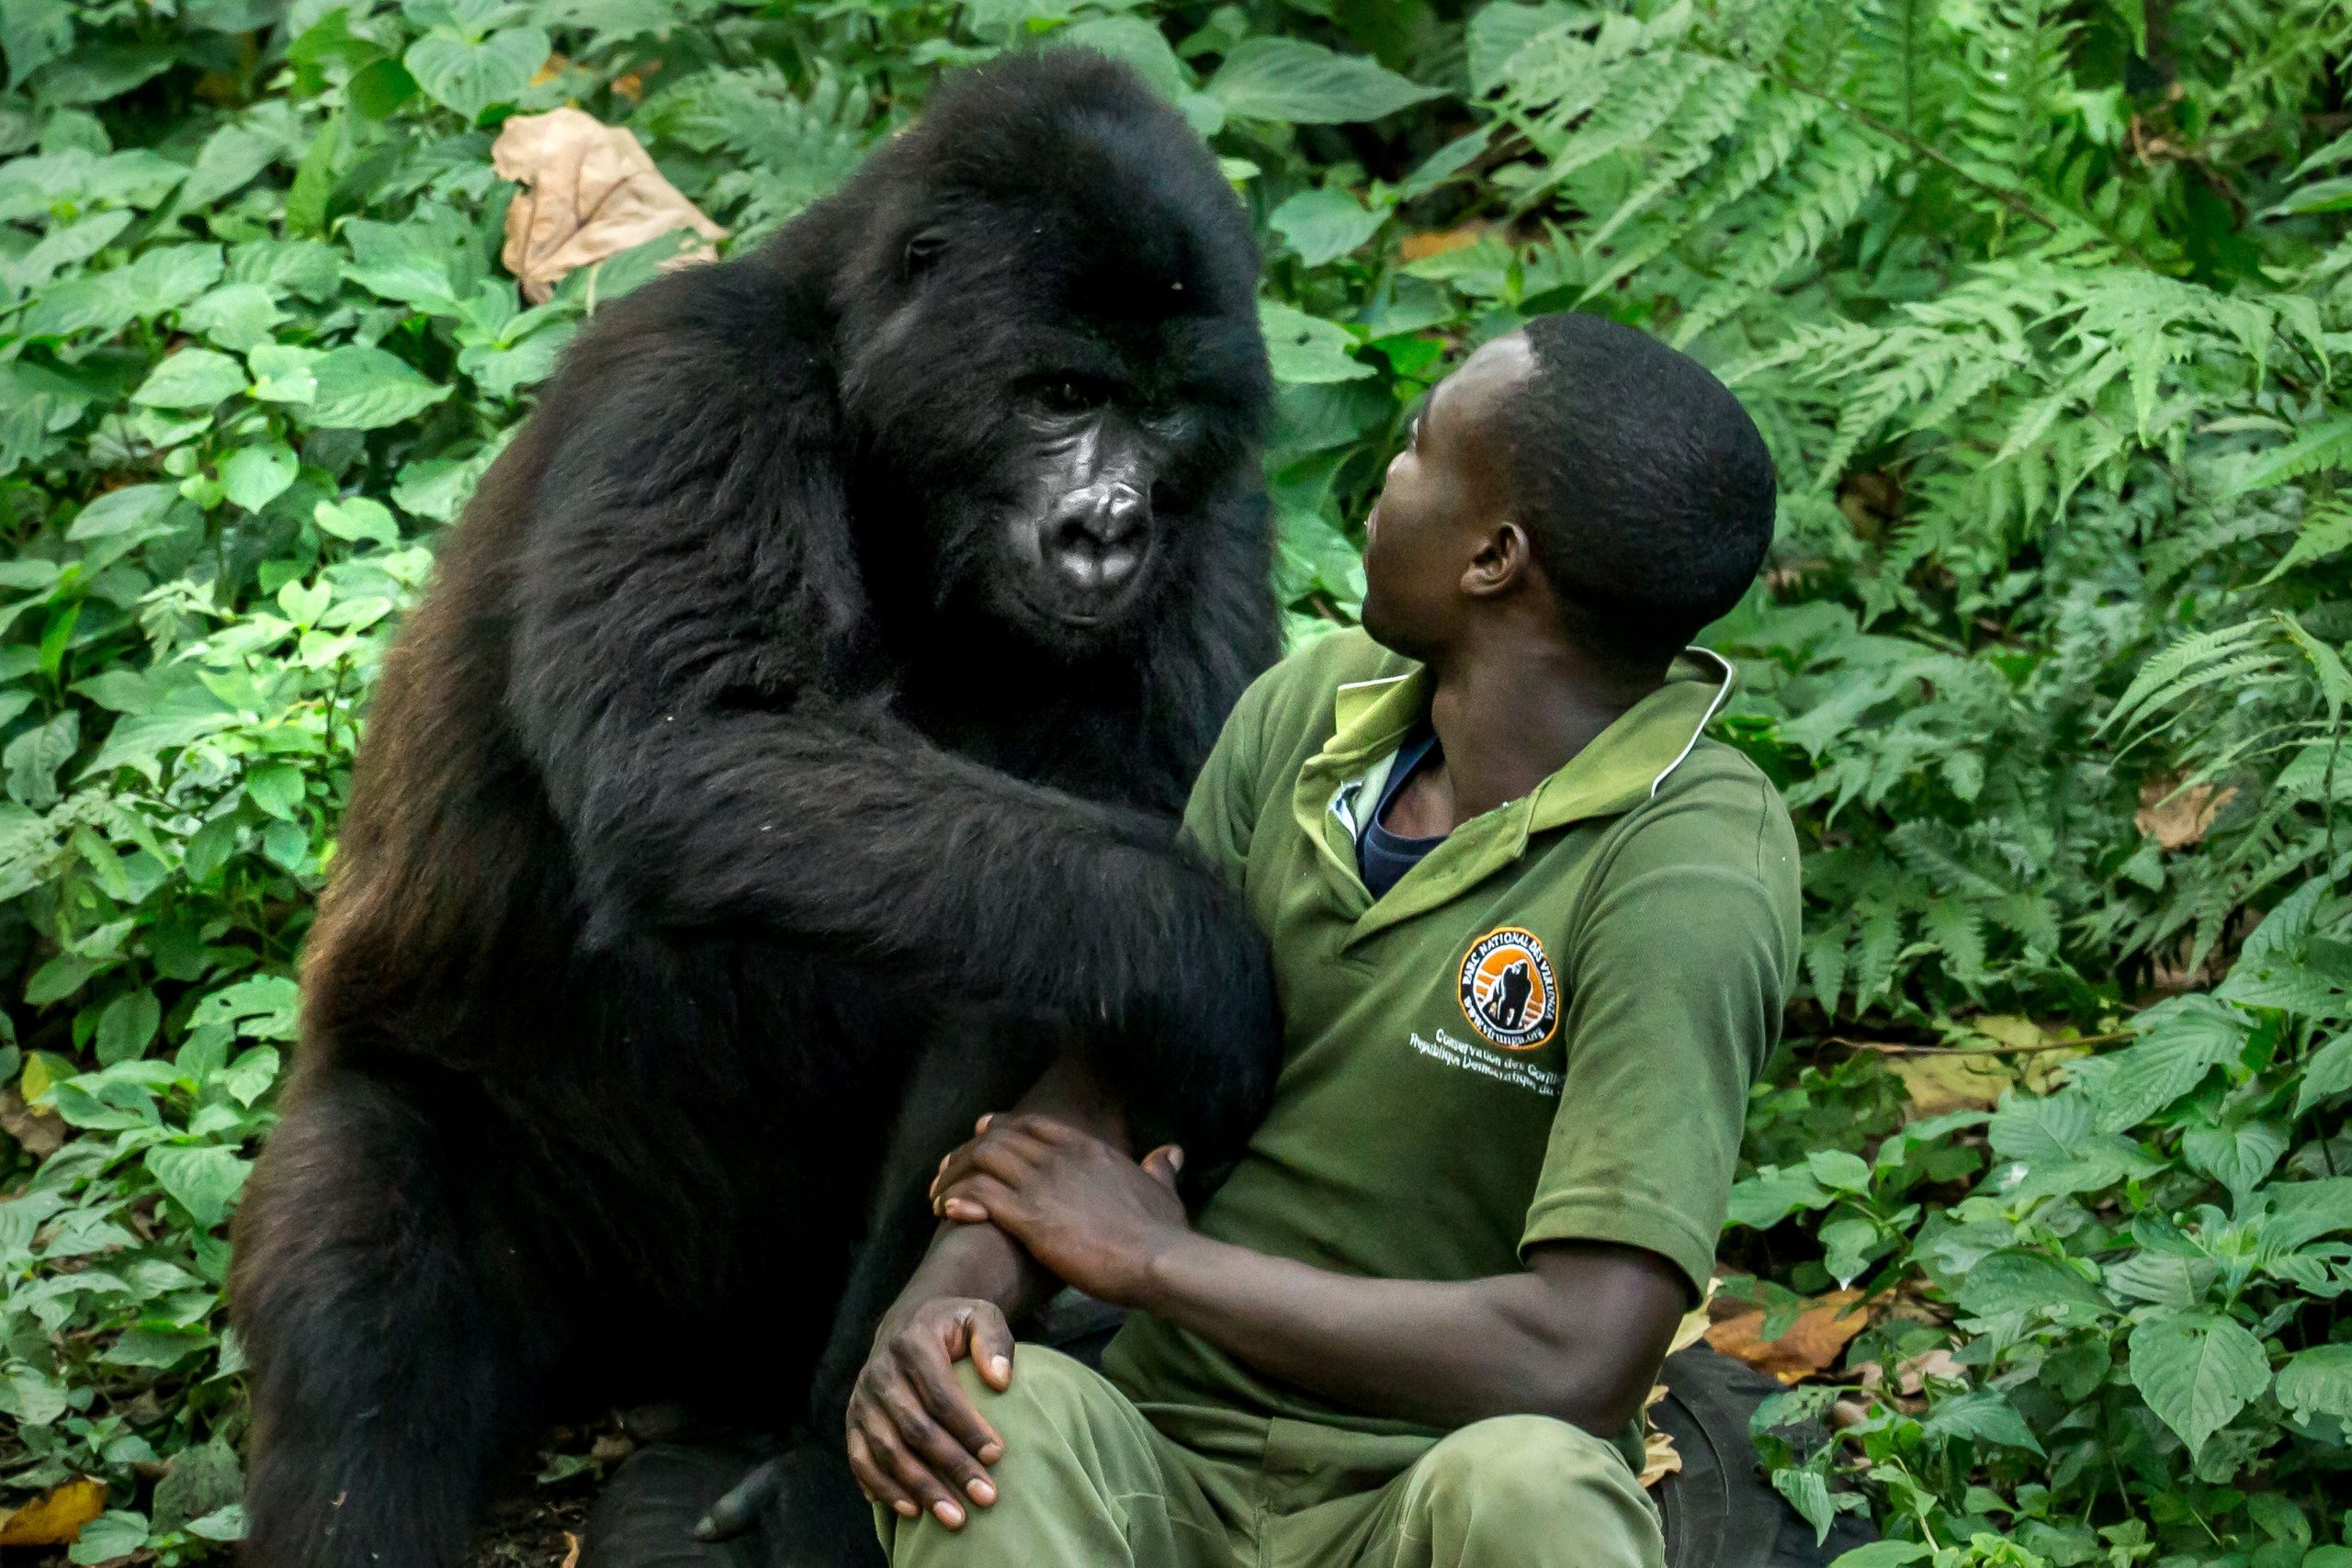 Are gorillas dangerous animals?